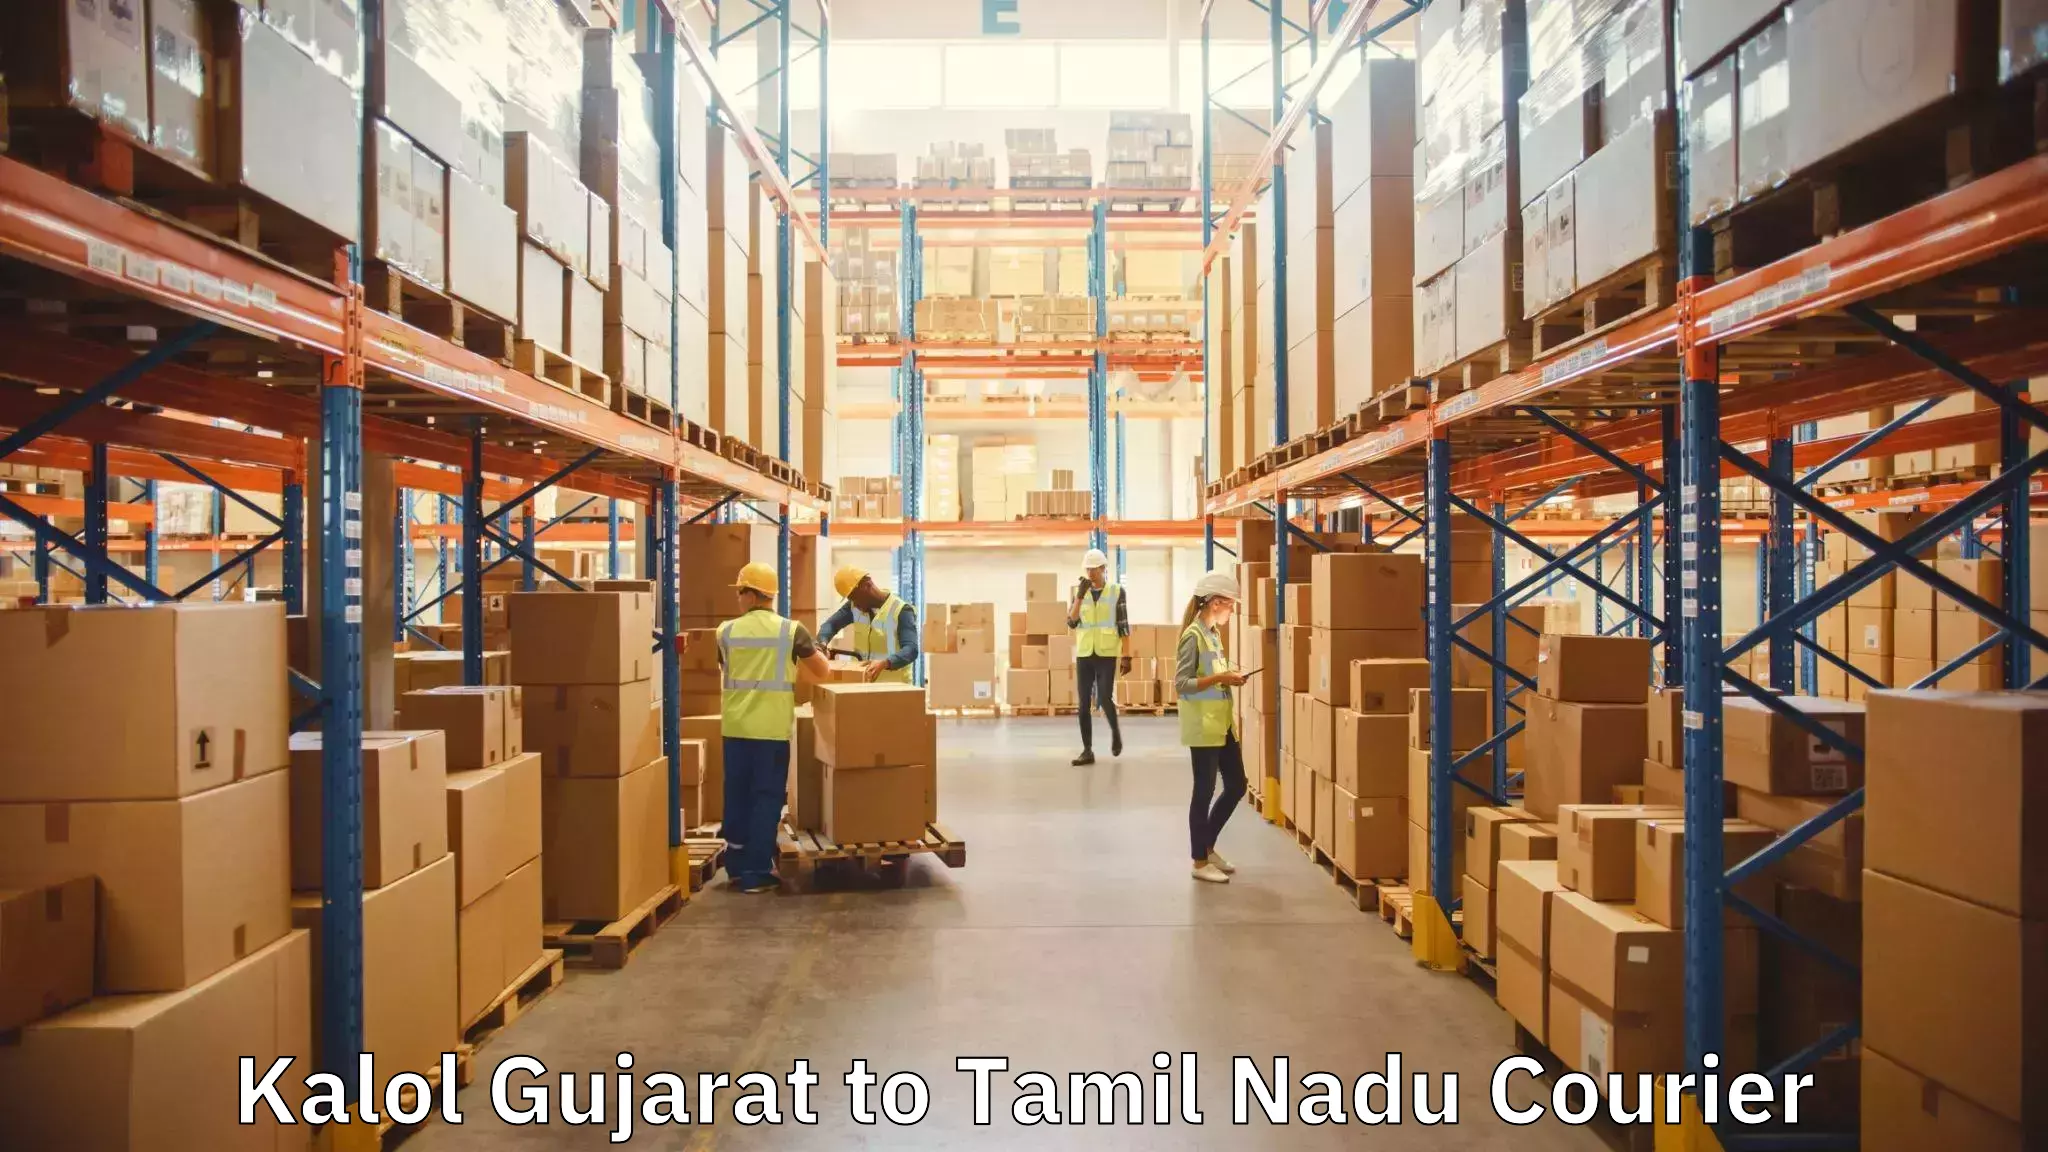 Professional movers Kalol Gujarat to Tamil Nadu